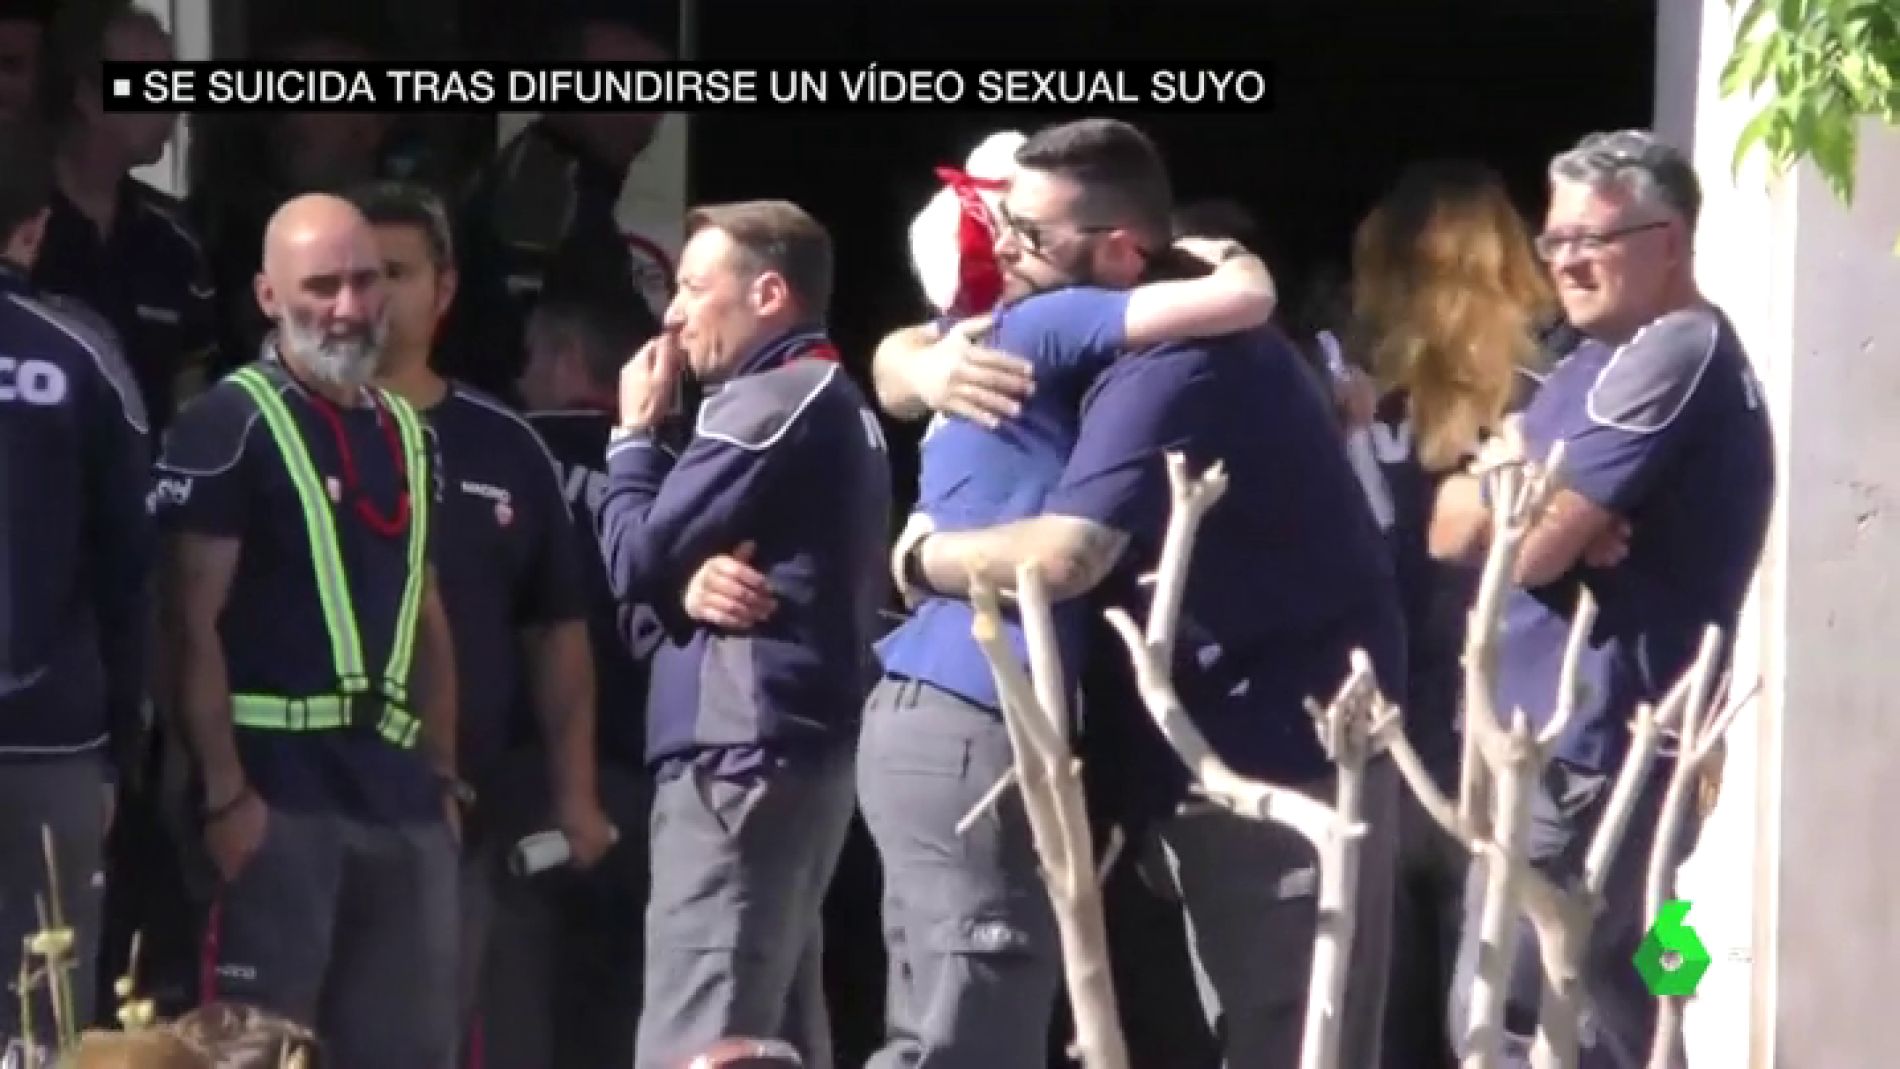 Una madre se suicida en Madrid tras difundirse un vídeo sexual suyo entre sus compañeros de trabajo en Iveco imagen foto